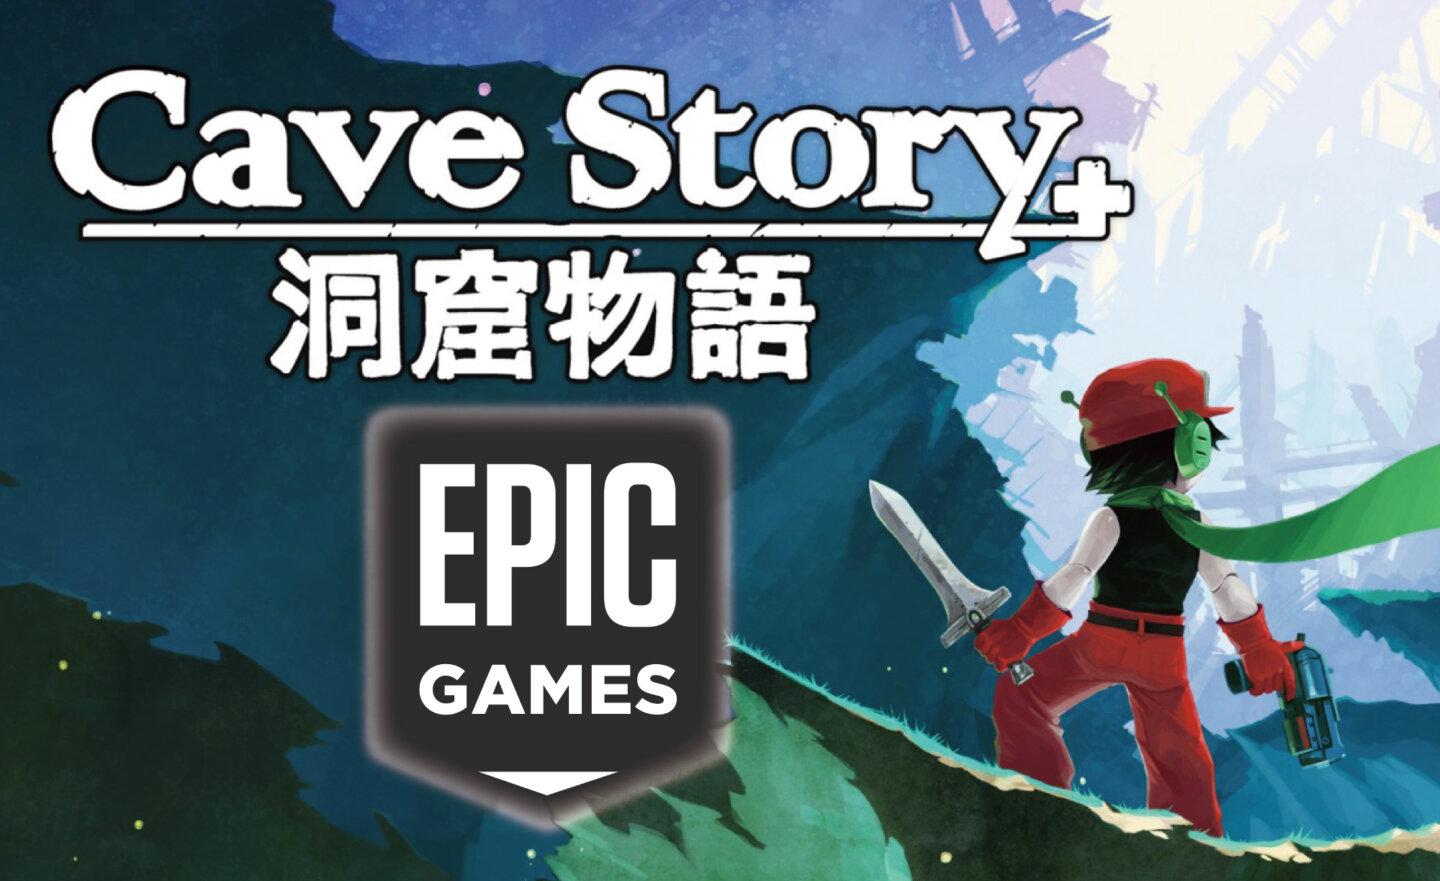 【限時免費】獨立製作橫向卷軸冒險遊戲《Cave Story+ 洞窟物語》放送中，2023 年 9 月 7 日晚上 11:00 截止